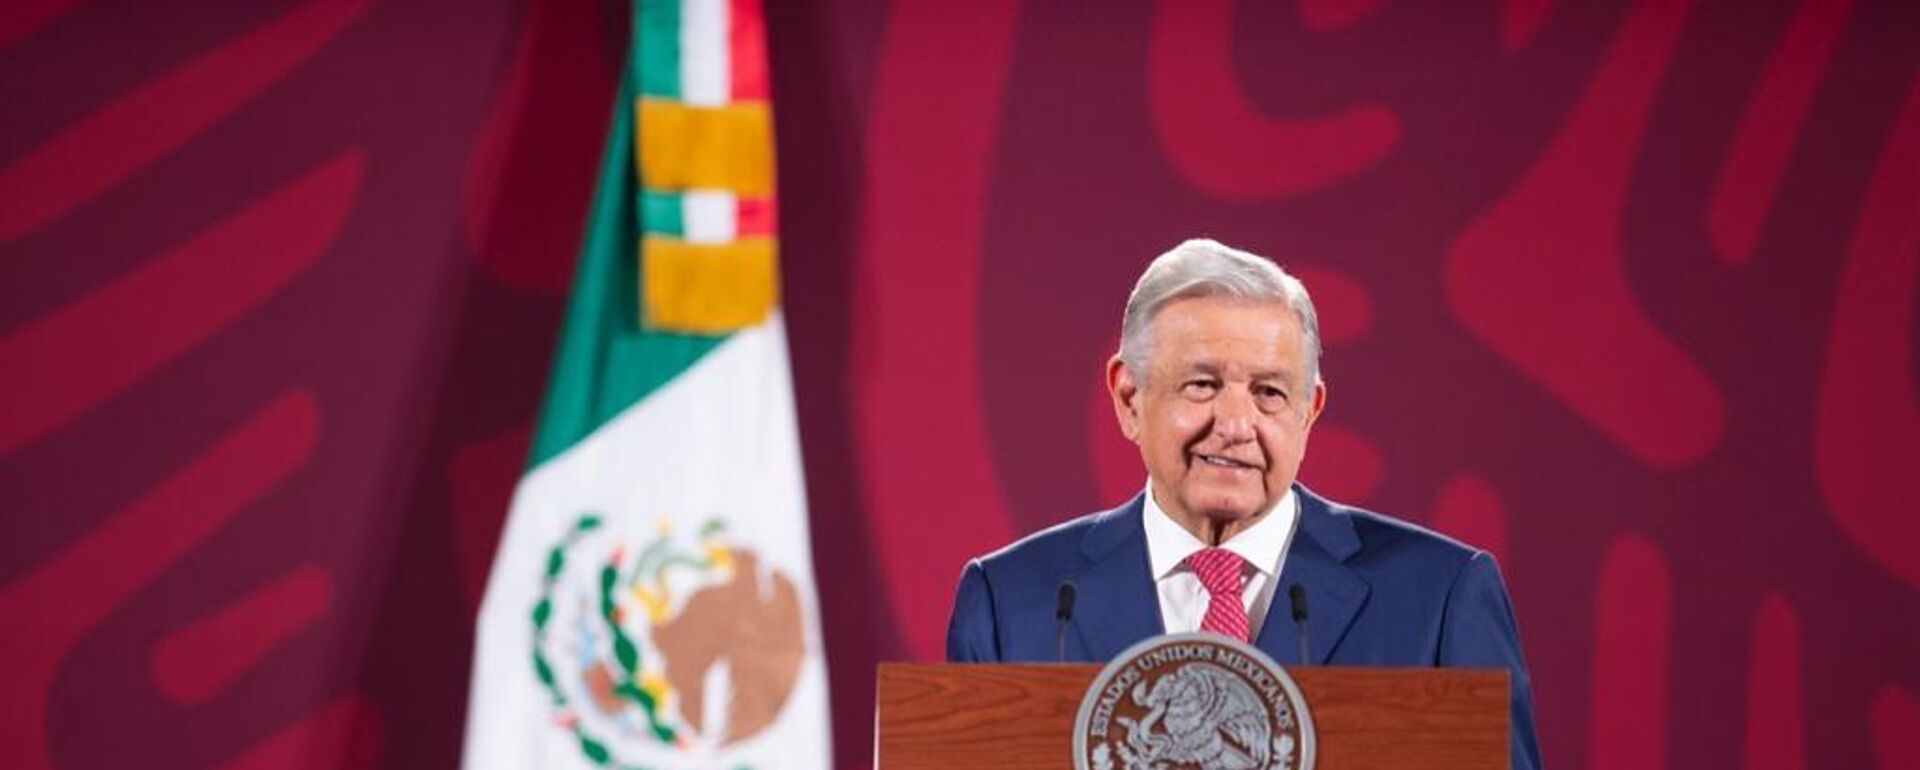 Andrés Manuel López Obrador, presidente de México - Sputnik Mundo, 1920, 05.09.2022